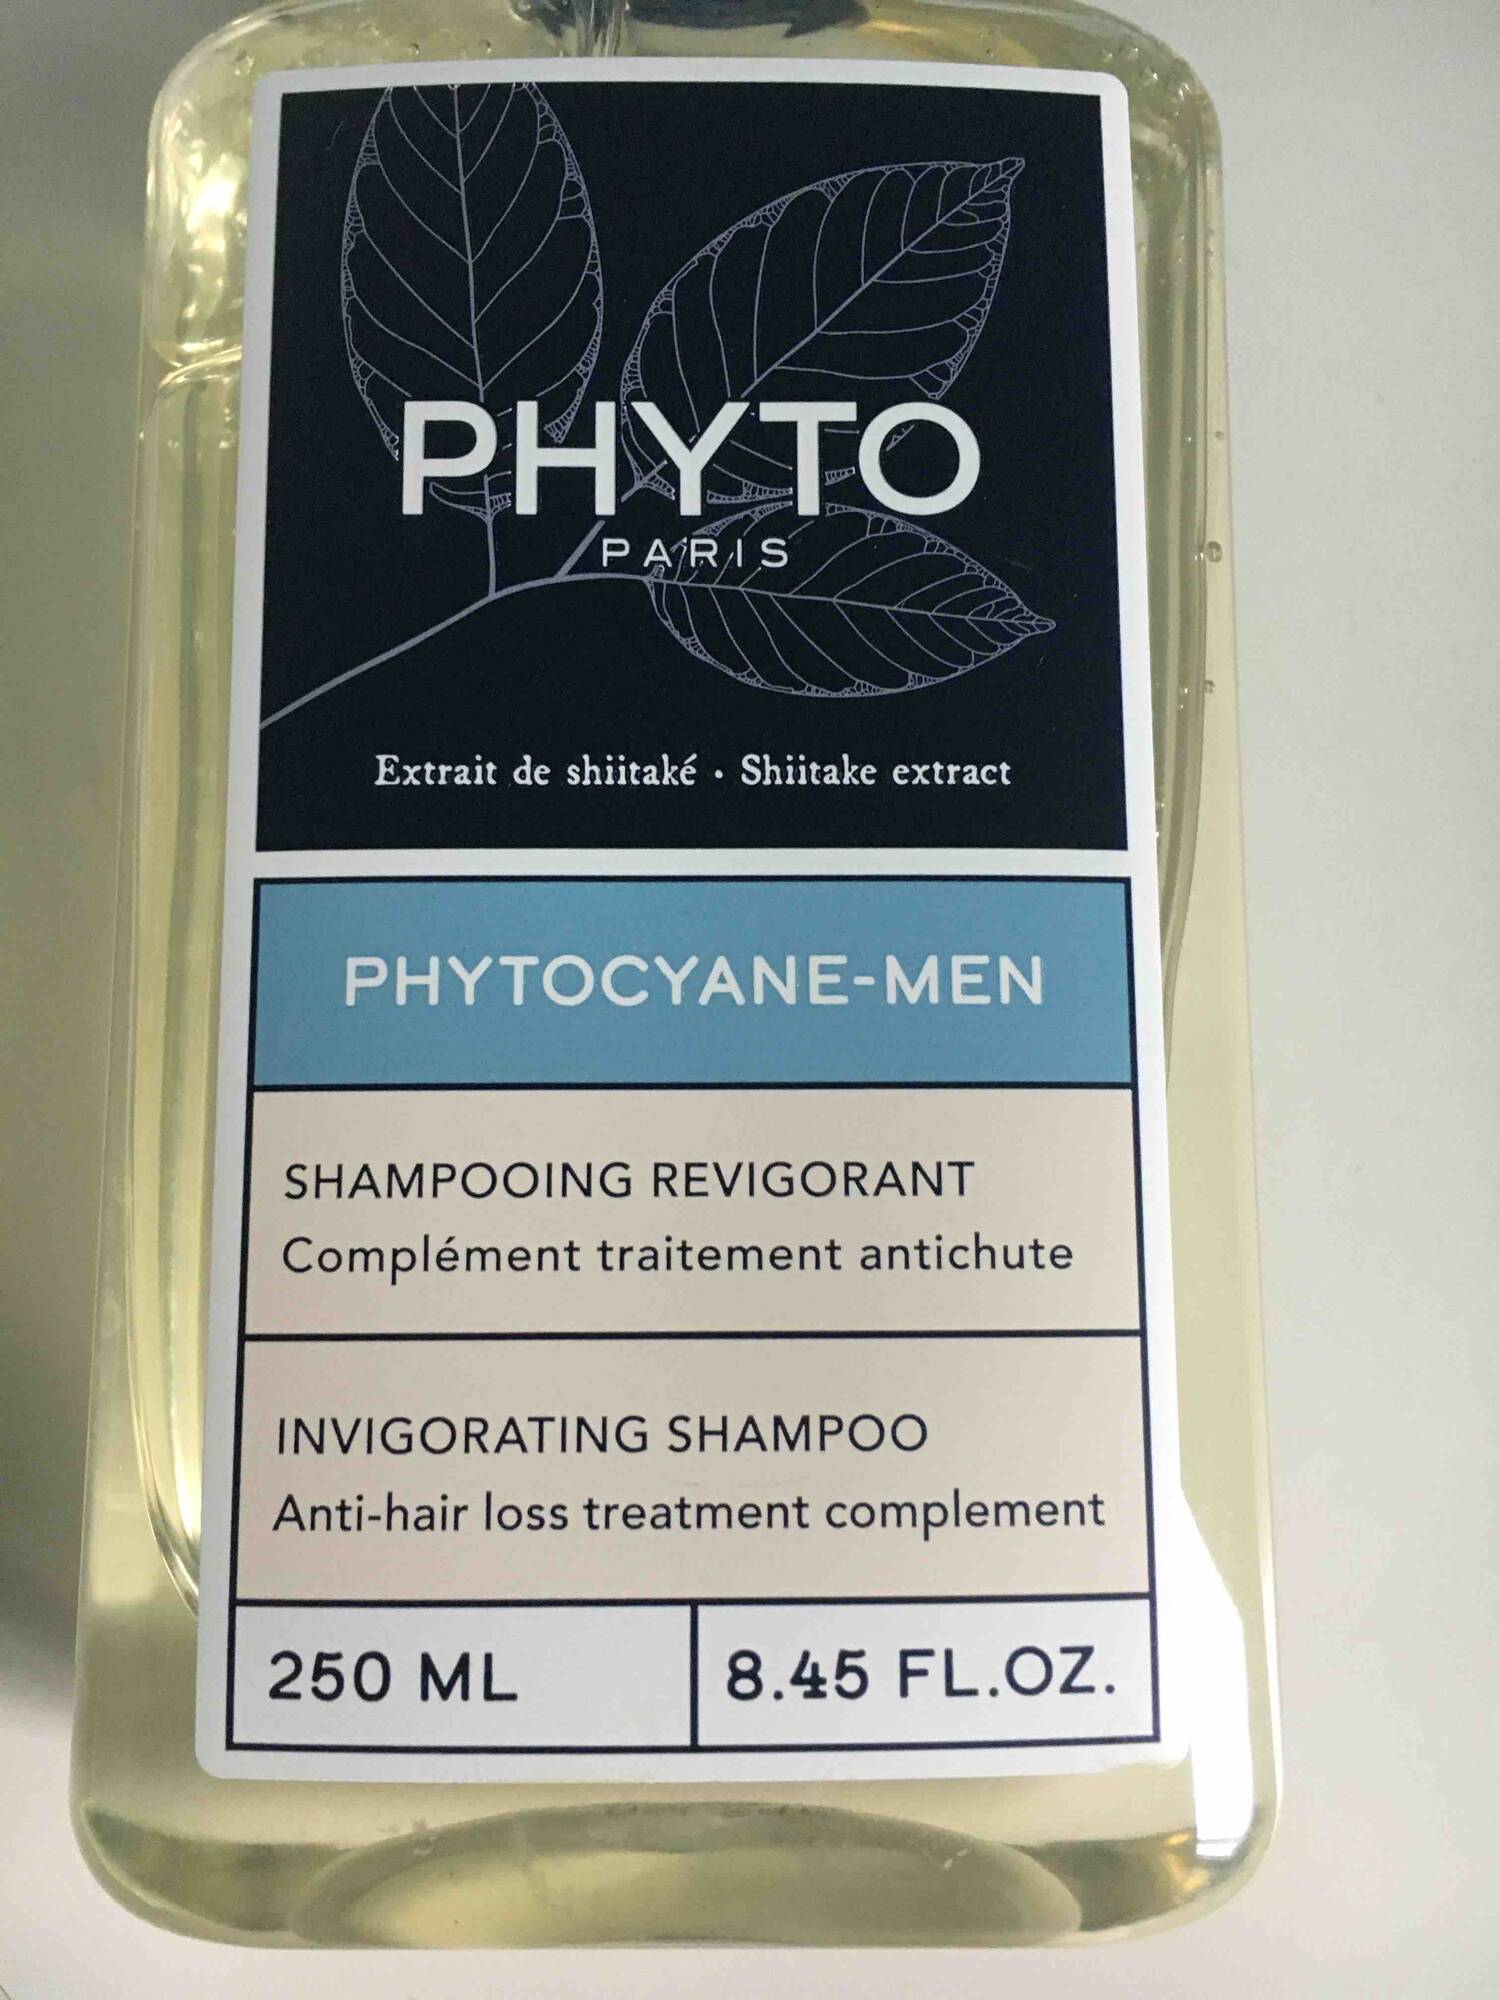 PHYTO - Phytocyane-men - Shampooing revigorant